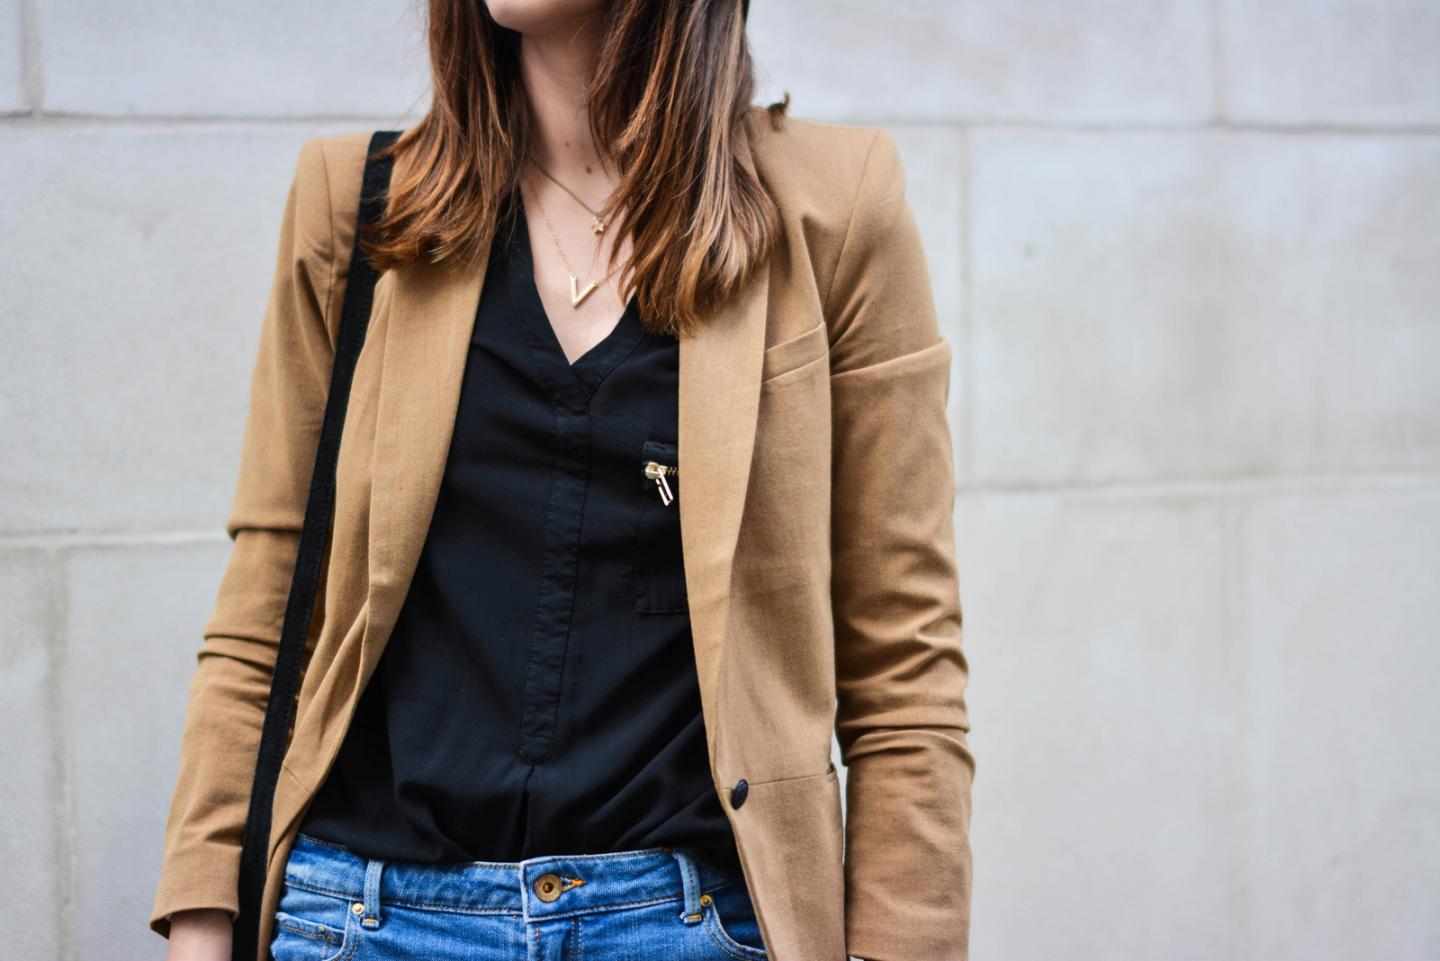 EJSTYLE - Emma Hill wearing Camel blazer, black shirt, denim shorts, gold necklaces